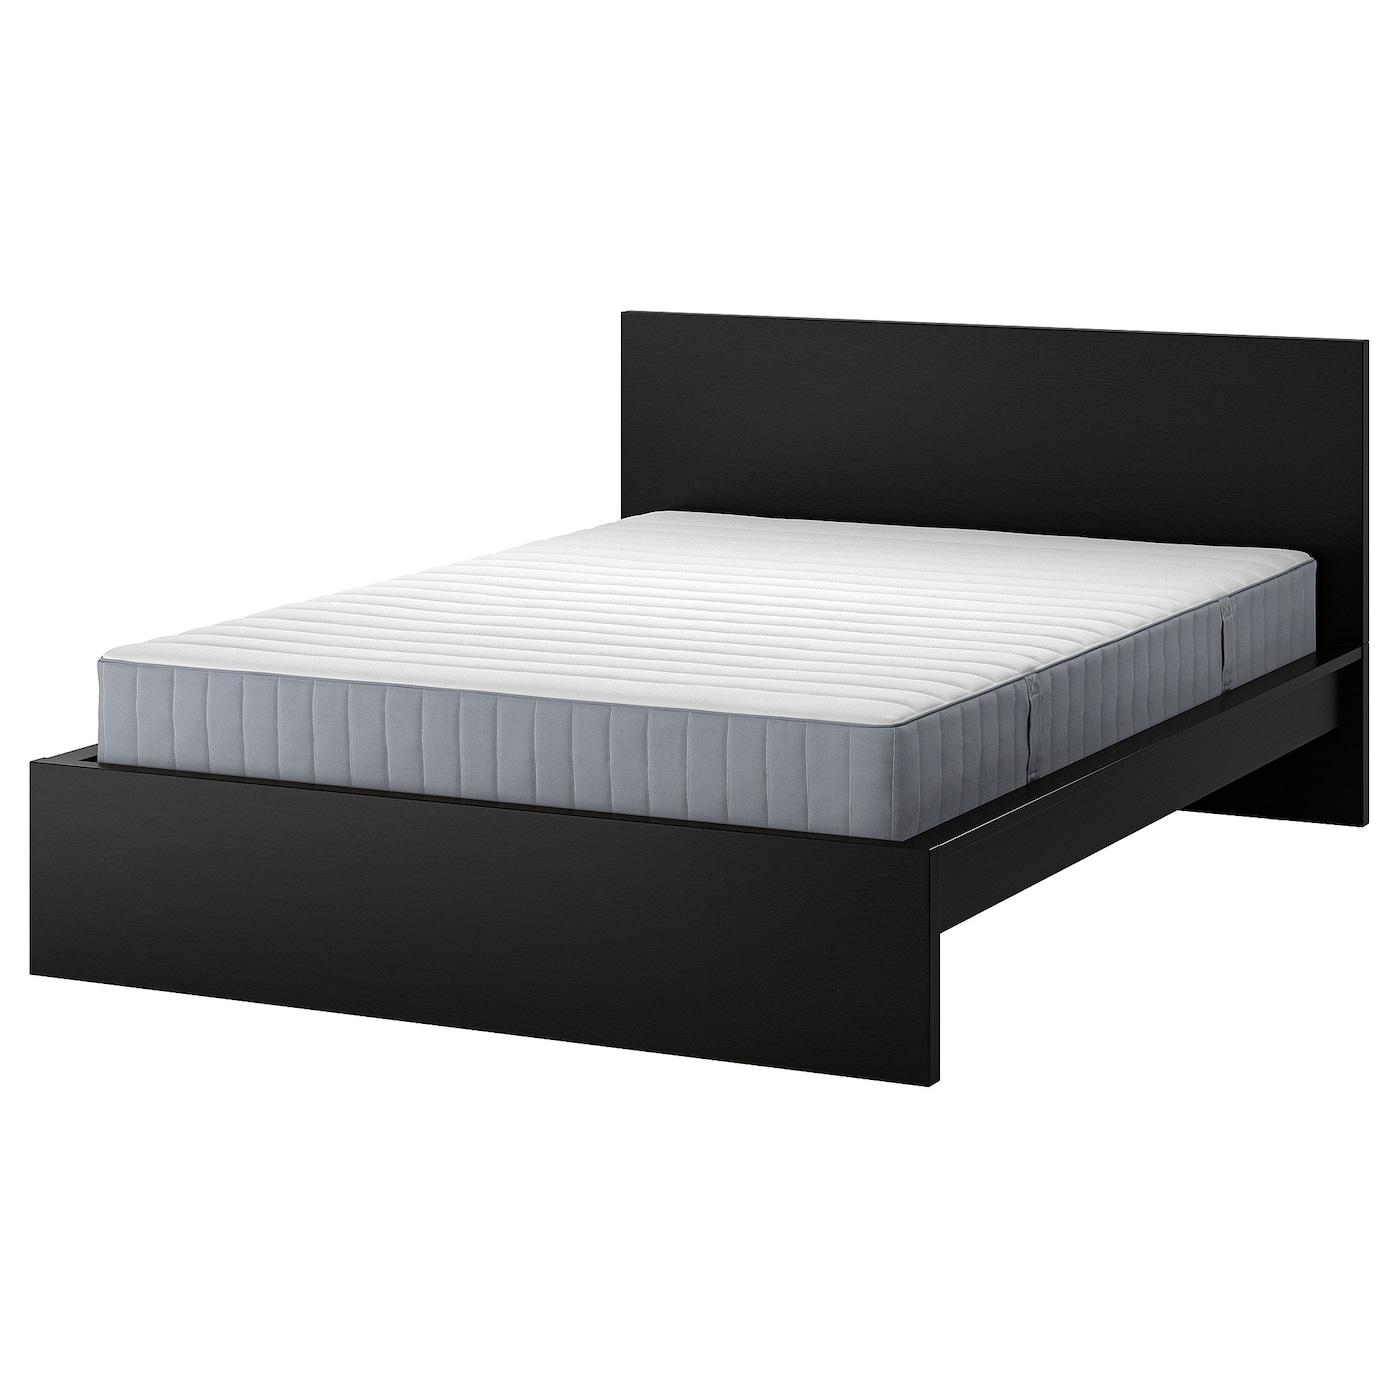 Кровать - IKEA MALM, 200х140 см, матрас жесткий, черно-коричневый, МАЛЬМ ИКЕА